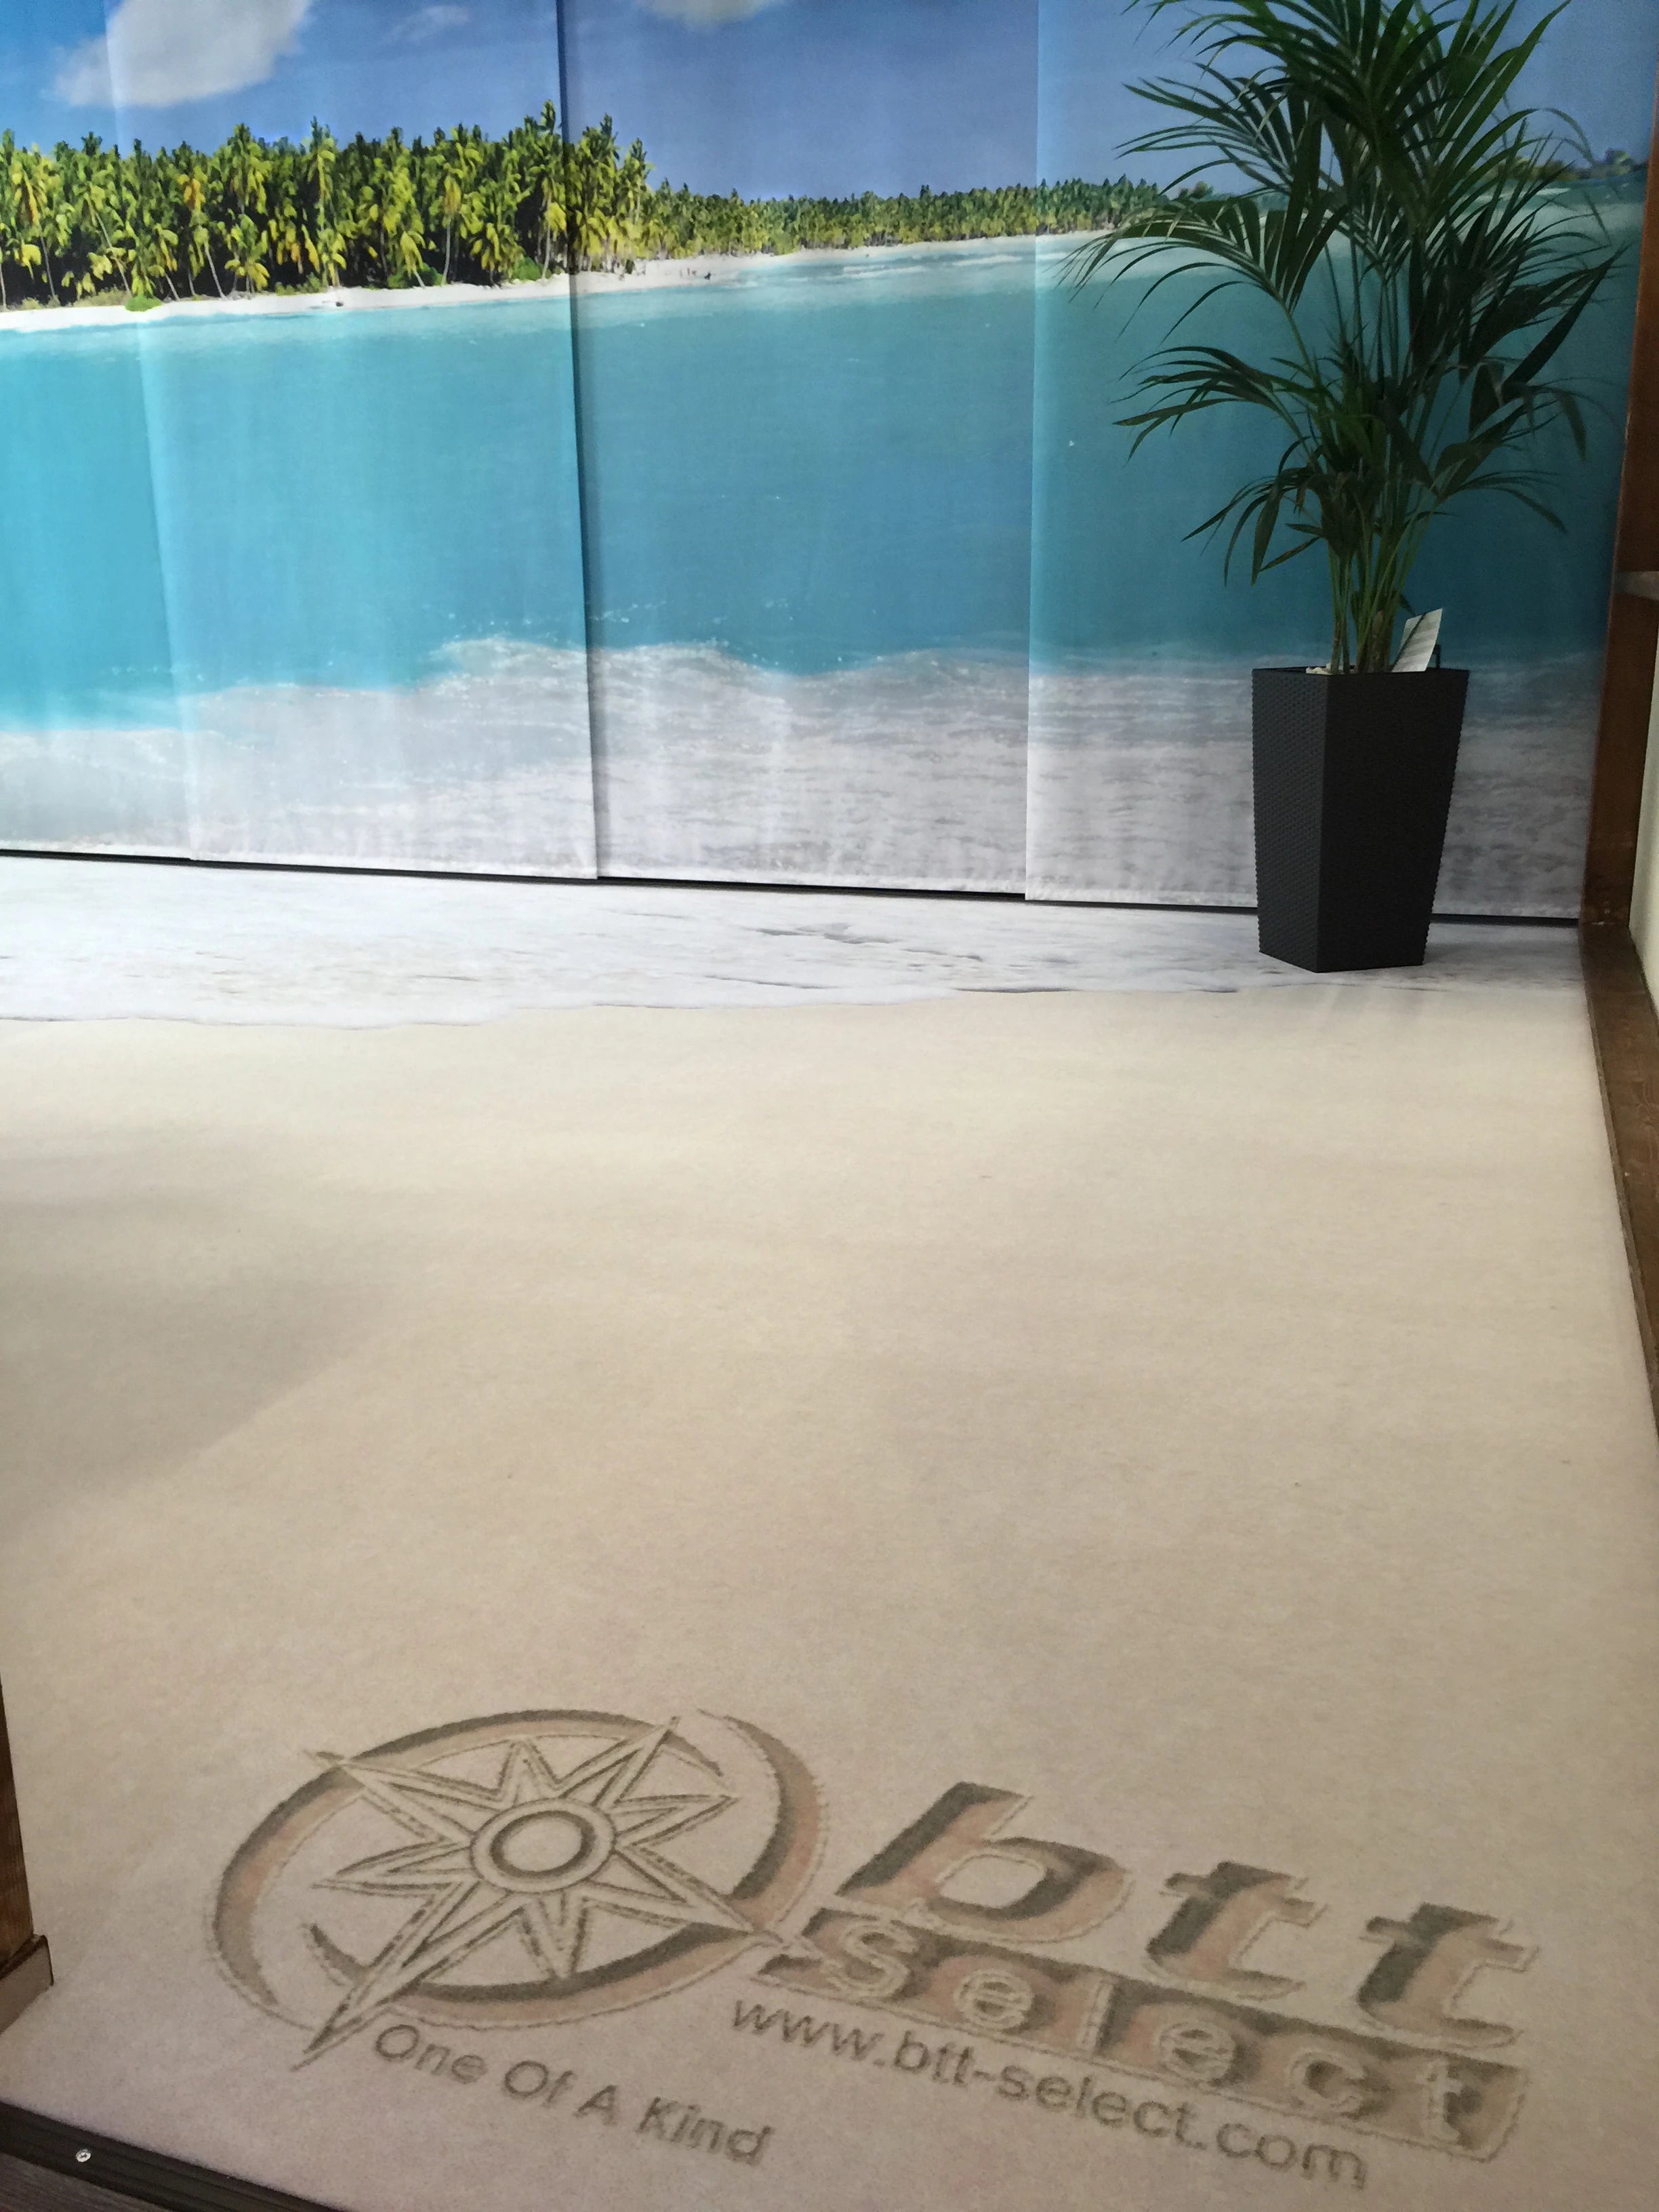 Fototeppich mit Logo des Reisebüros bedruckt das aussieht als ob jemand das Logo in den Sand gemalt hat